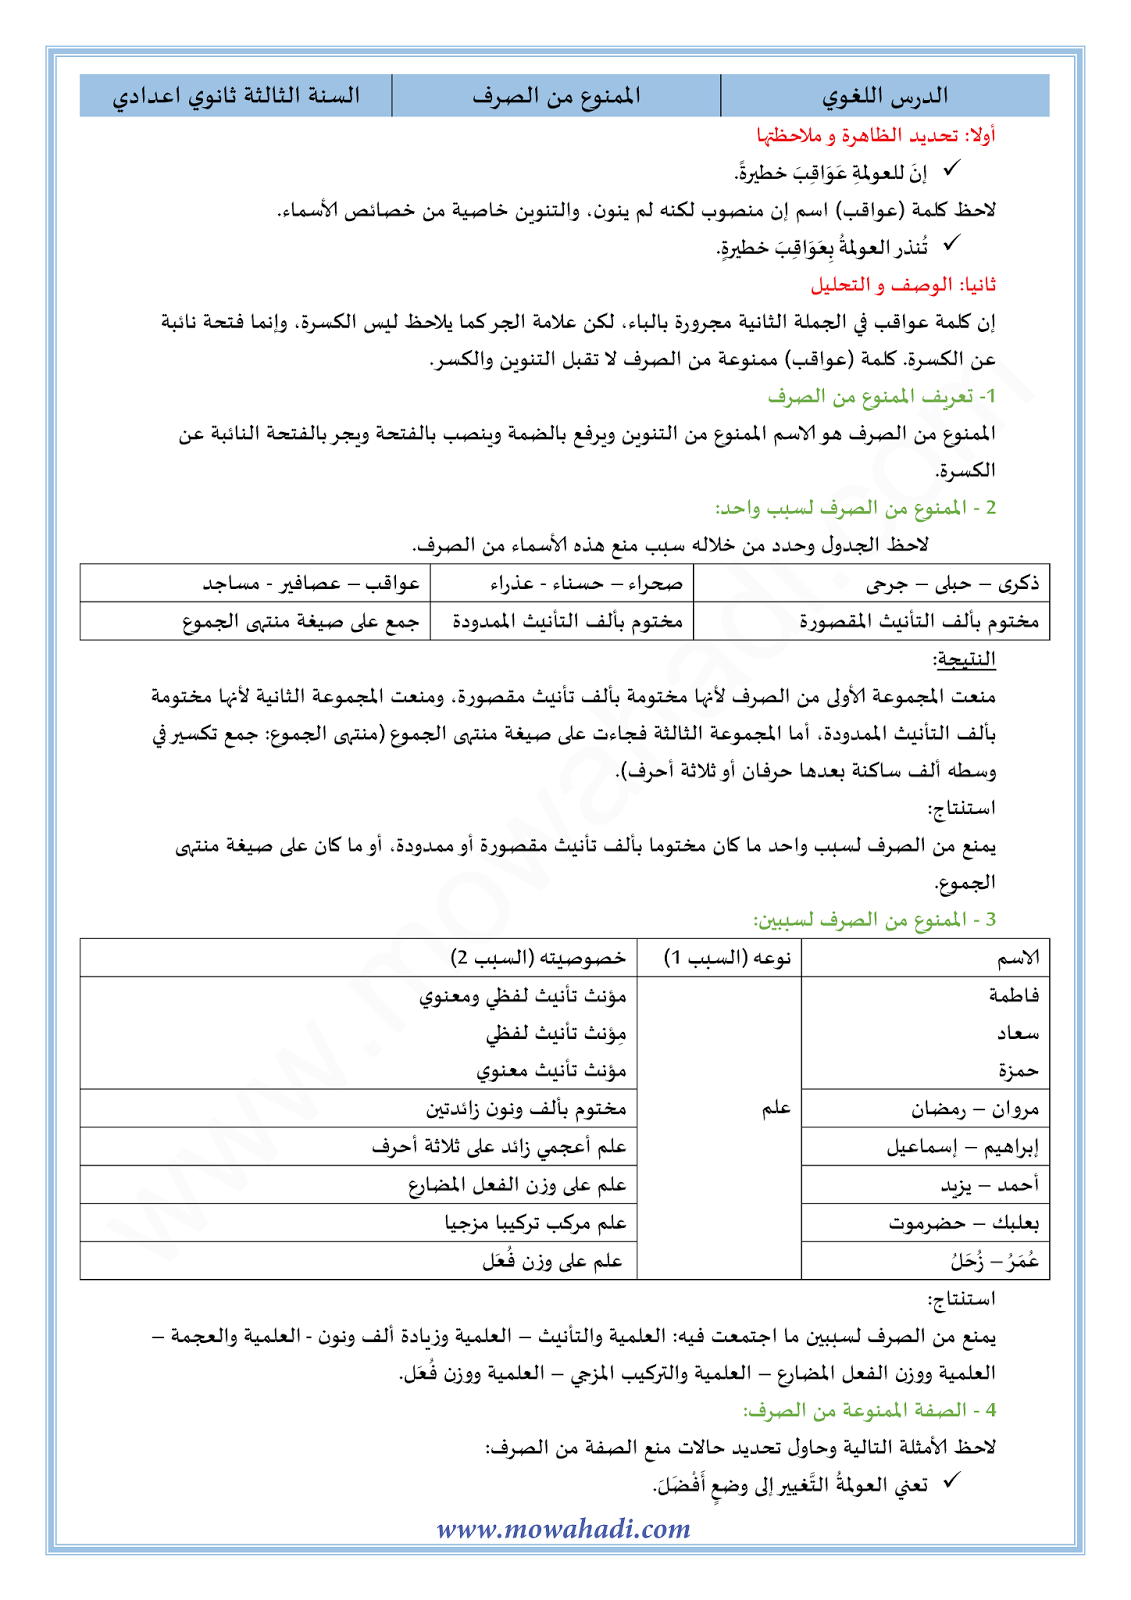 الدرس اللغوي الممنوع من الصرف للسنة الثالثة اعدادي في مادة اللغة العربية 7-cours-dars-loghawi3_001